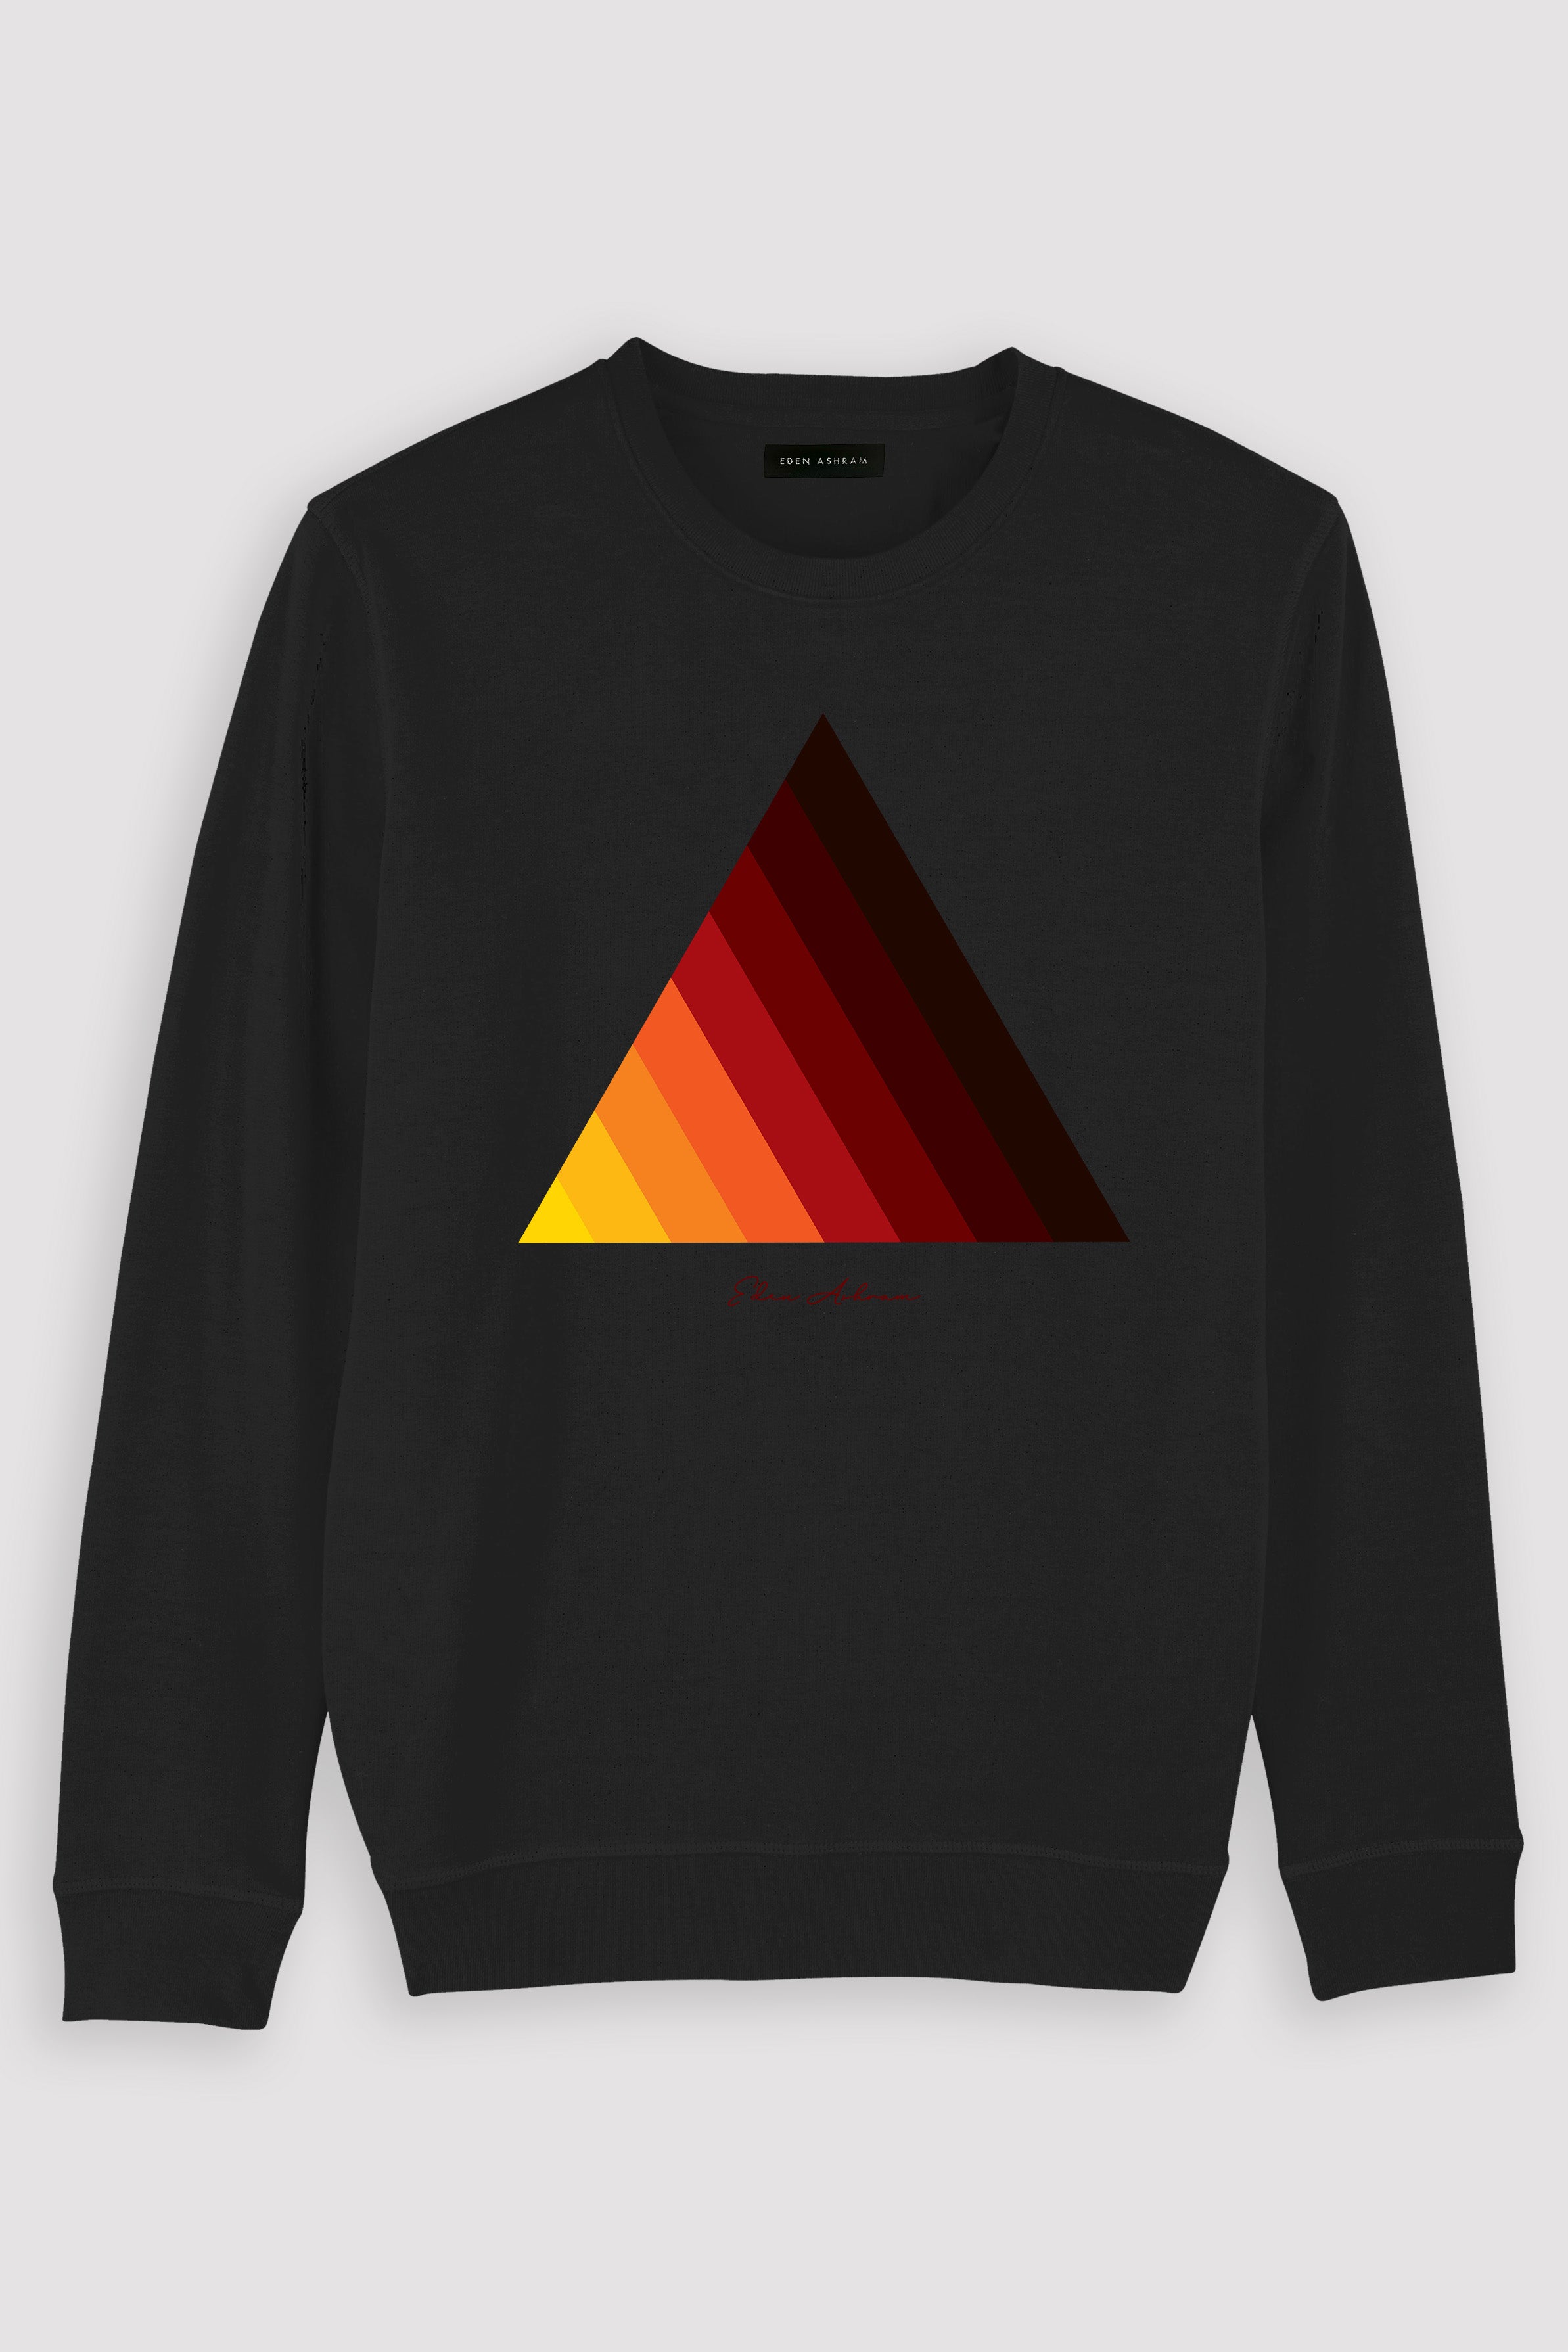 EDEN ASHRAM Retro Pyramid Premium Crew Neck Sweatshirt Vintage Black